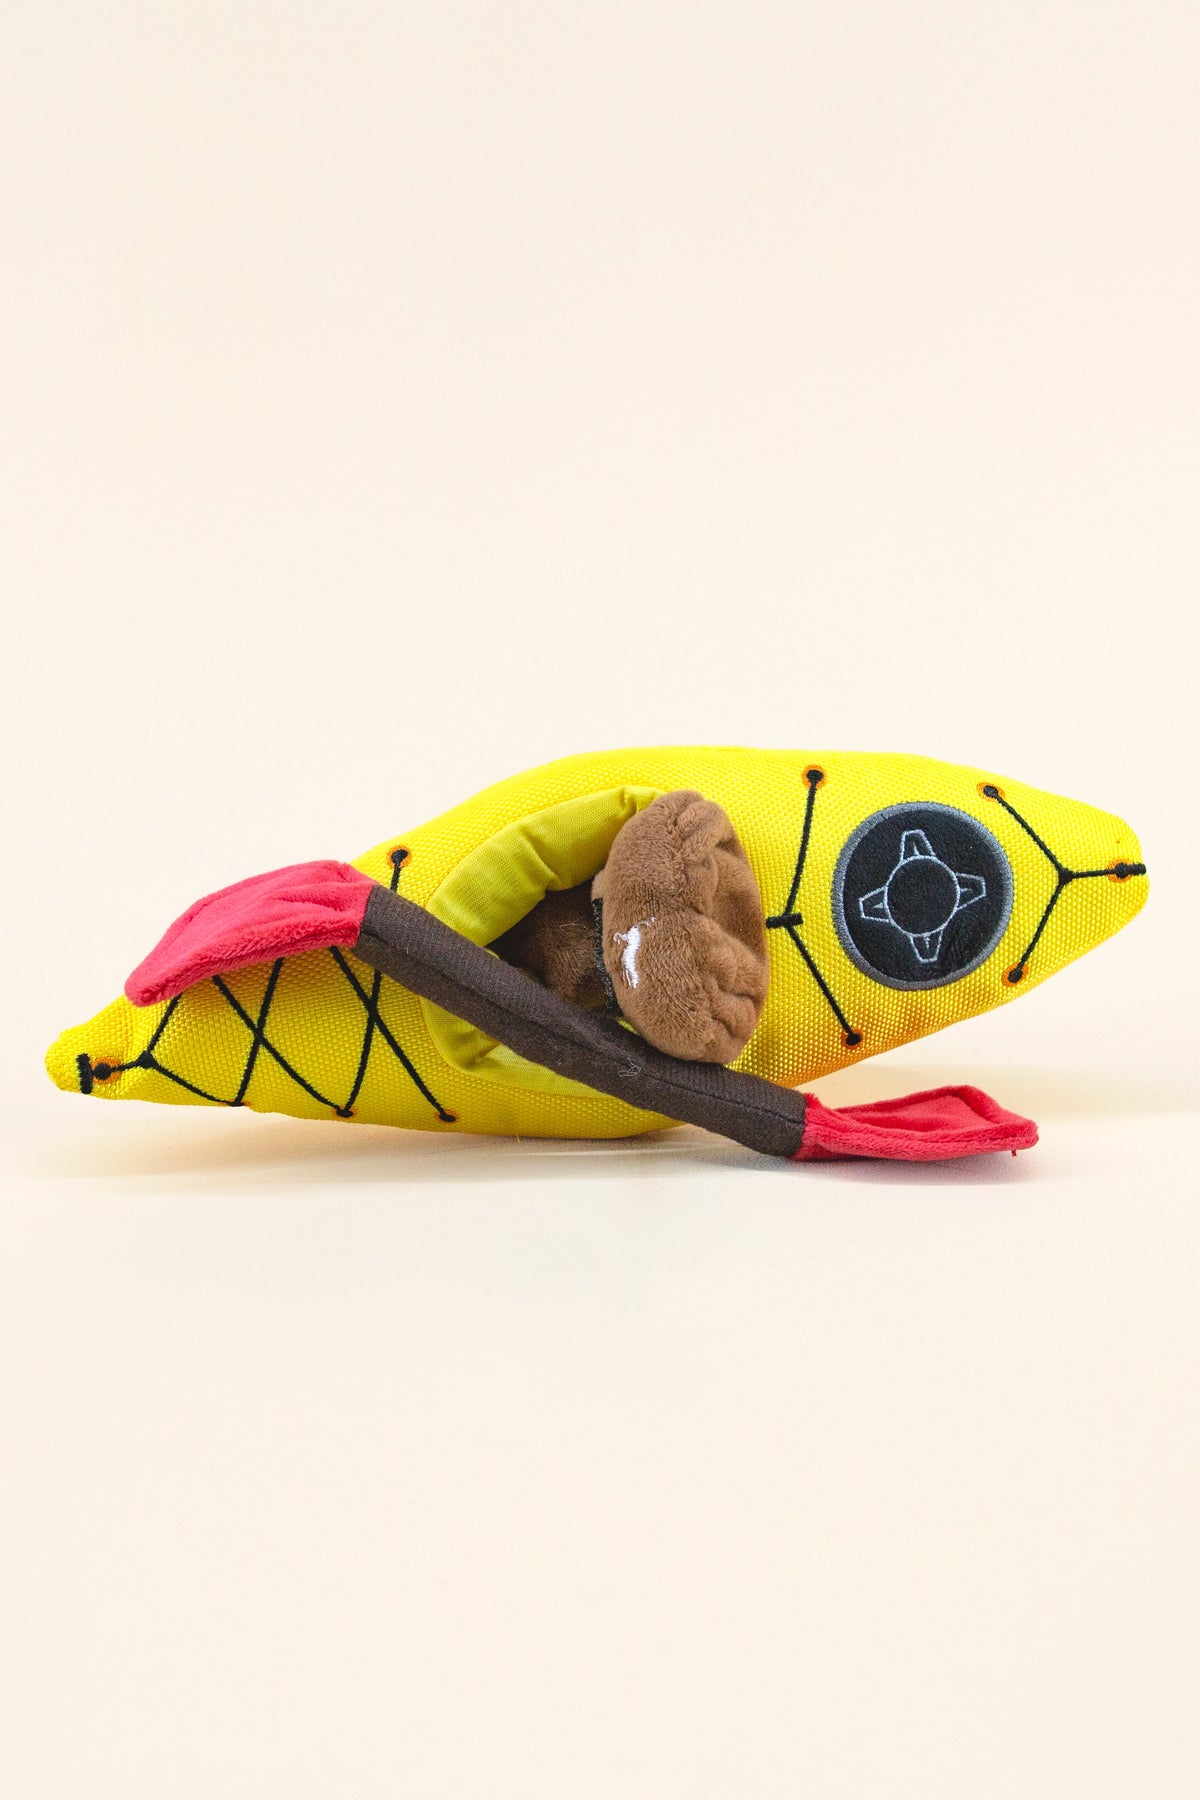 kayak dog toy